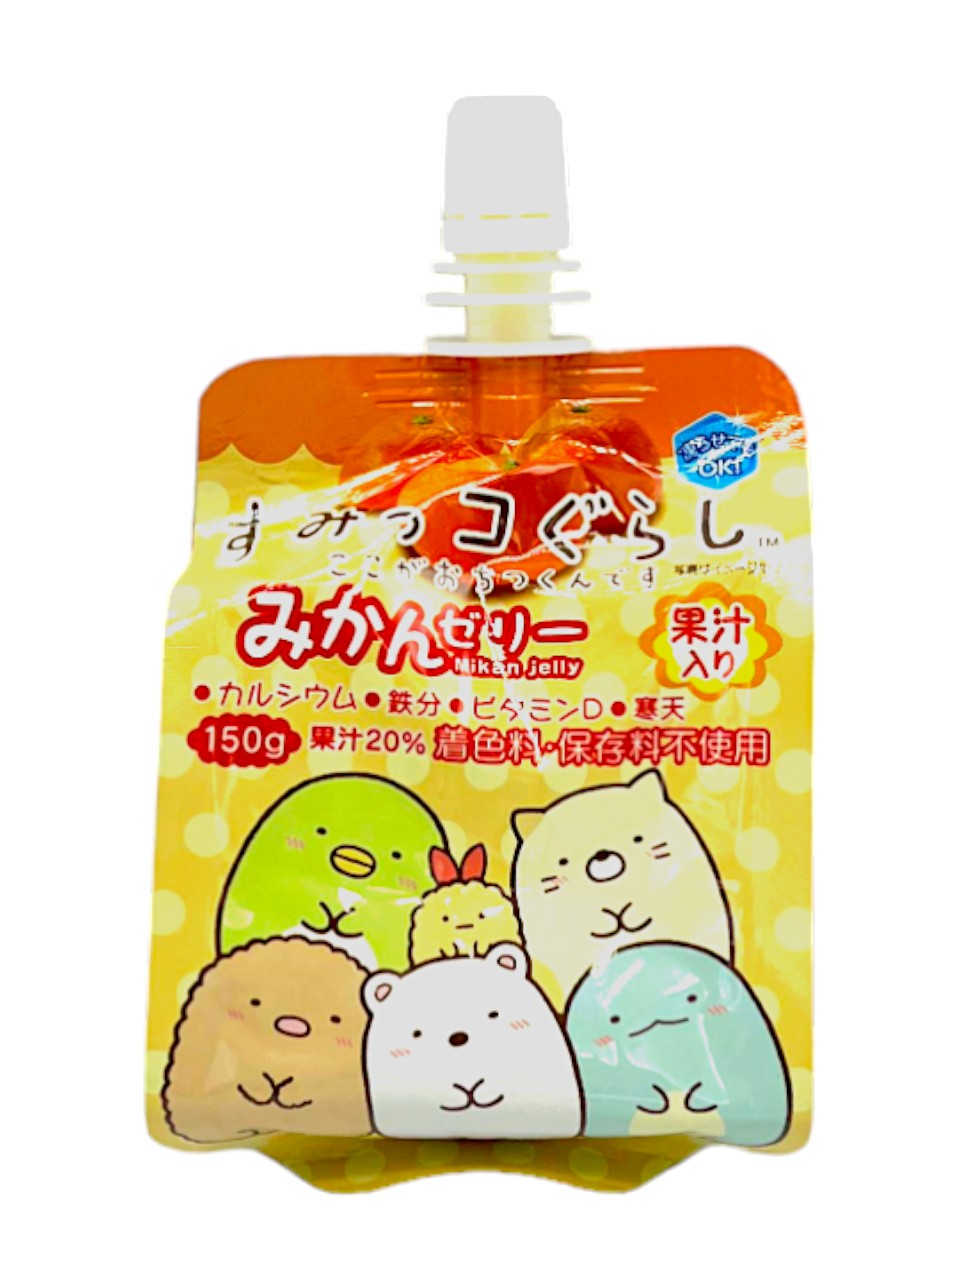 Yokoo Sumikko Gurashi Orange Jelly Pack of 6 (Japan)